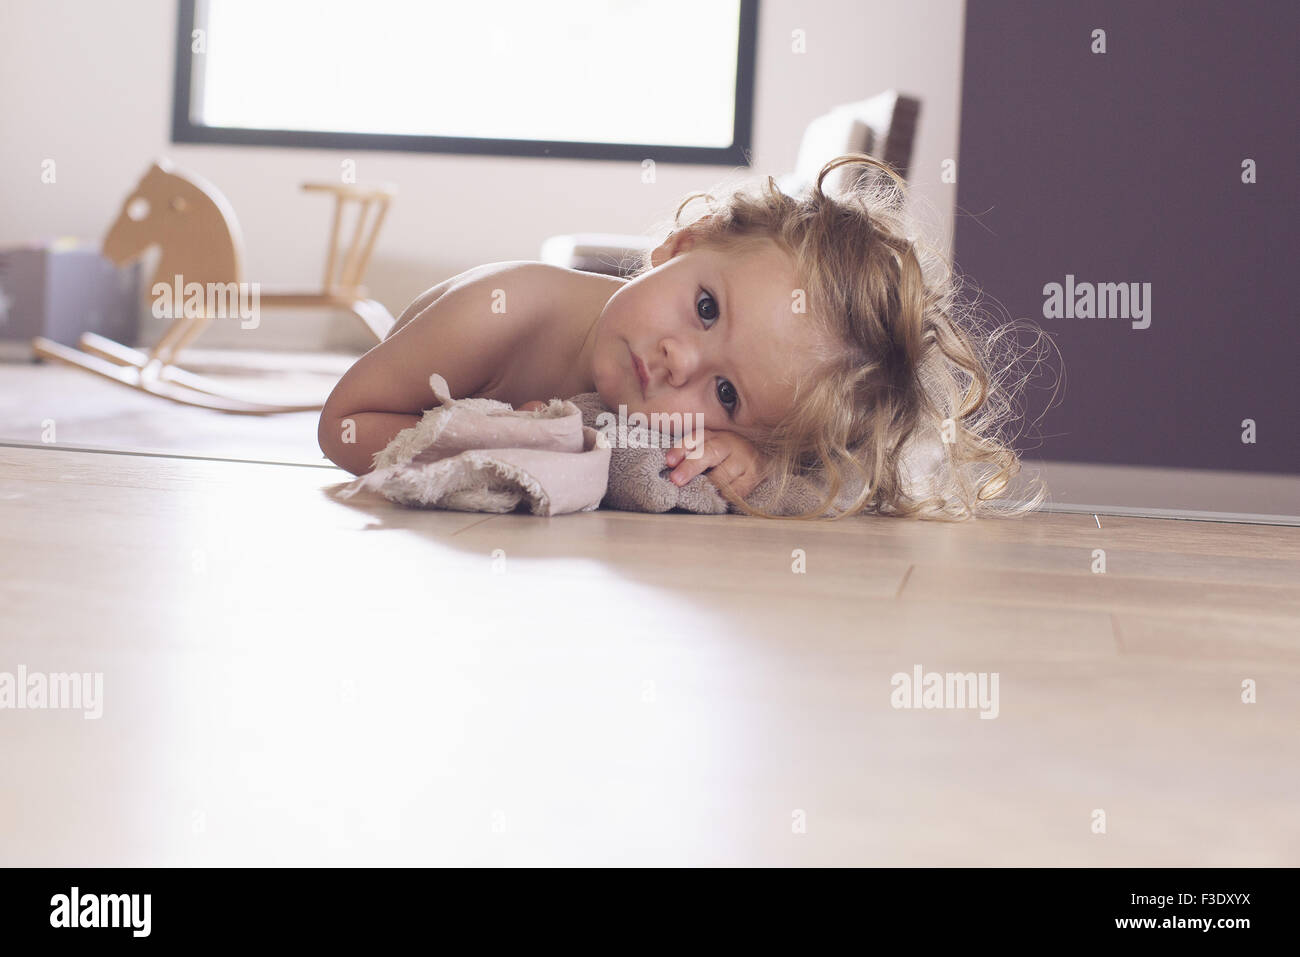 Baby girl lying on floor, portrait Stock Photo